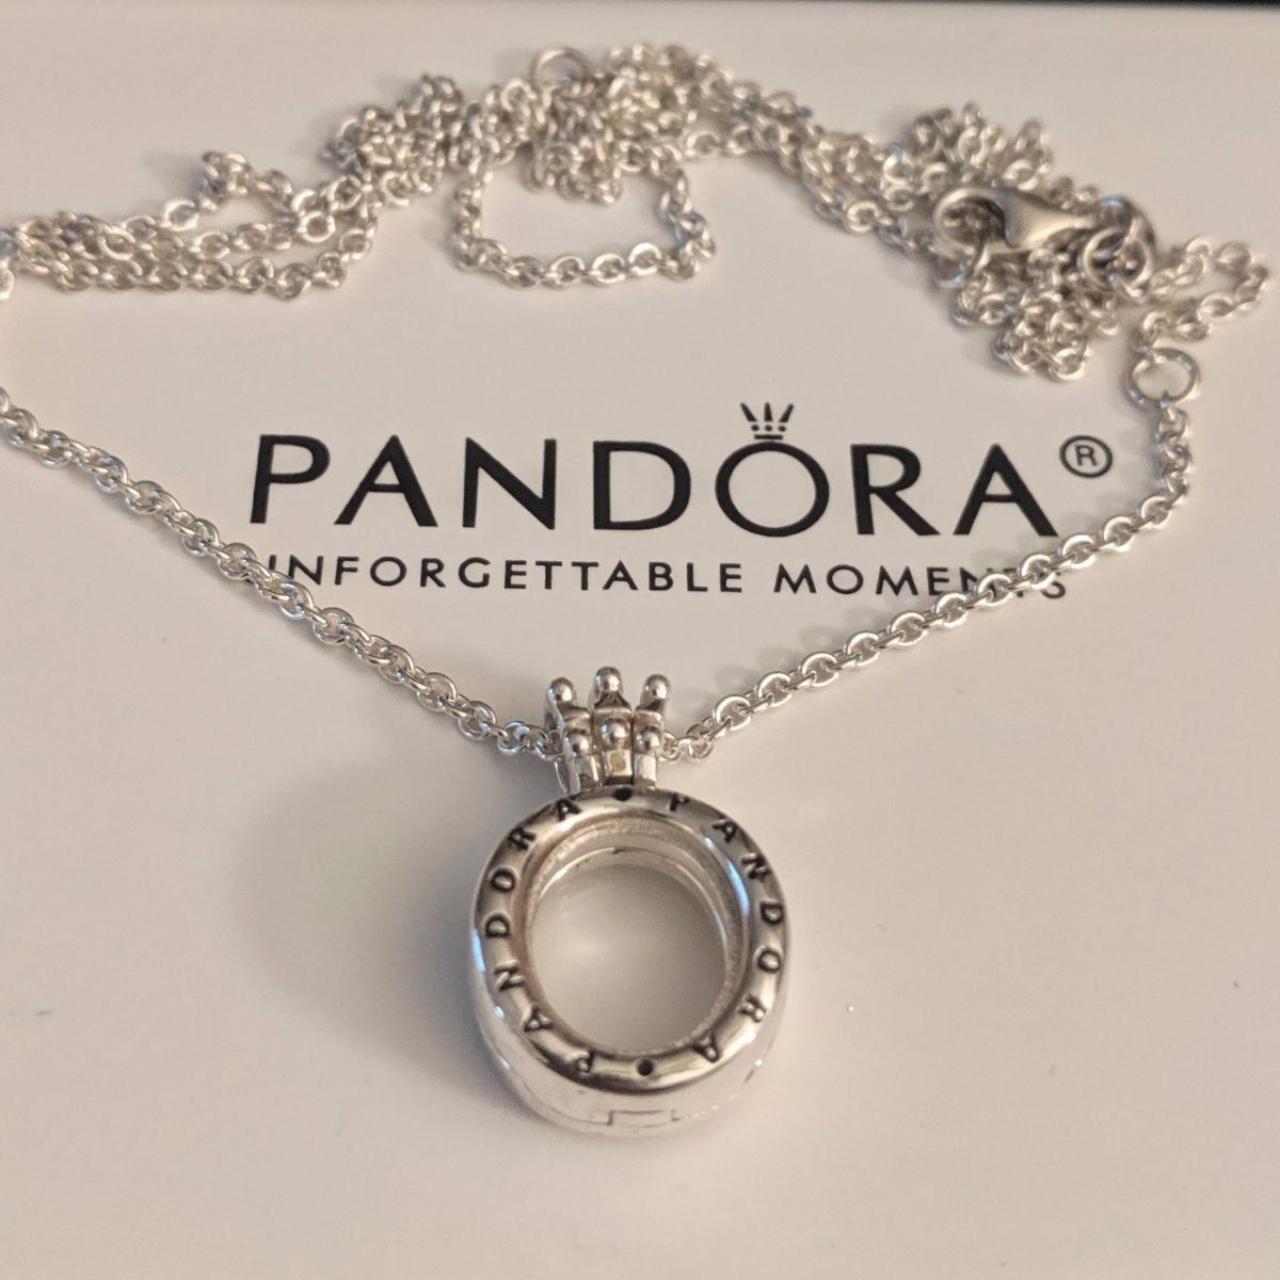 Pandora Family Always Encircled Pendant Necklace (60cm) | Shopee Malaysia